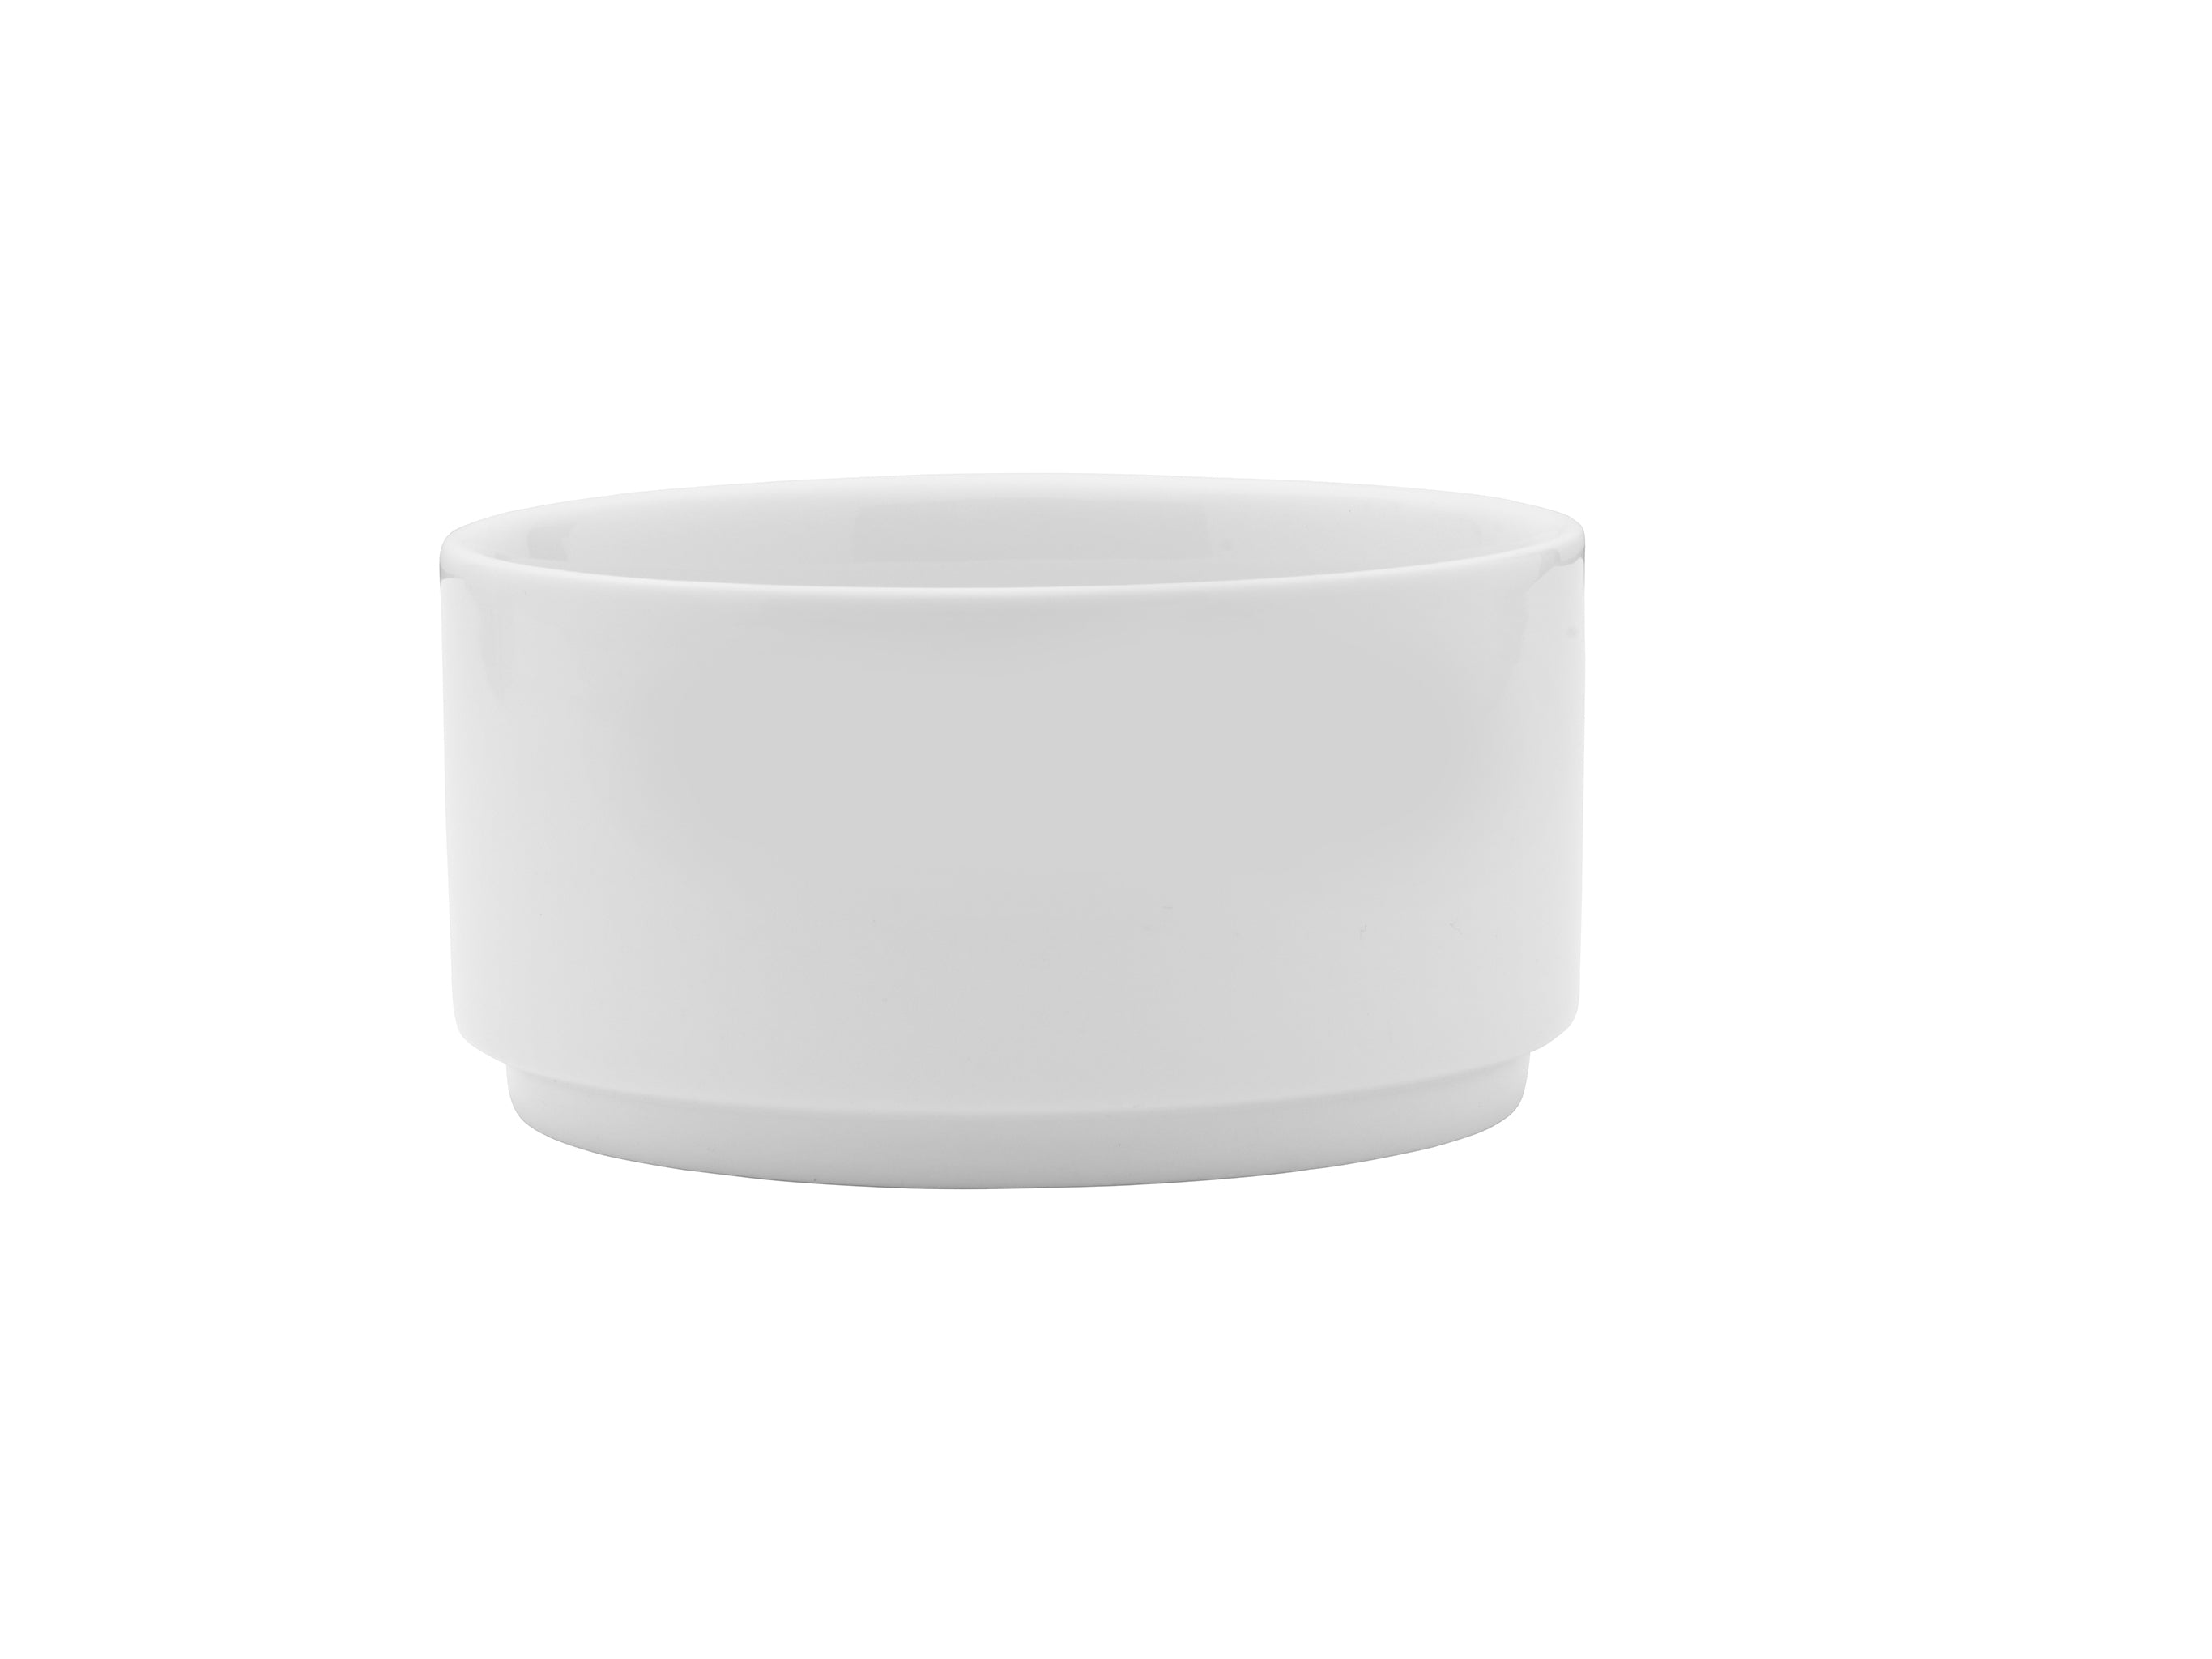 Galleria Porcelain Bowl 7" / 46oz White